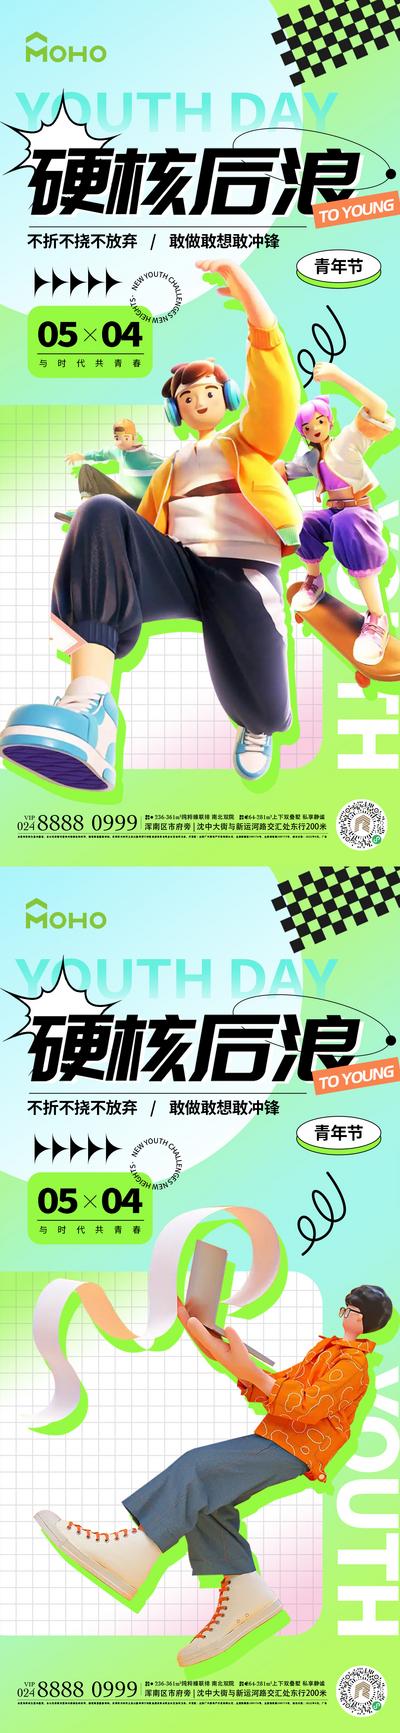 【南门网】广告 运动 五四 青年节 54 青年 活力 放假 游玩 年轻 少年 音乐